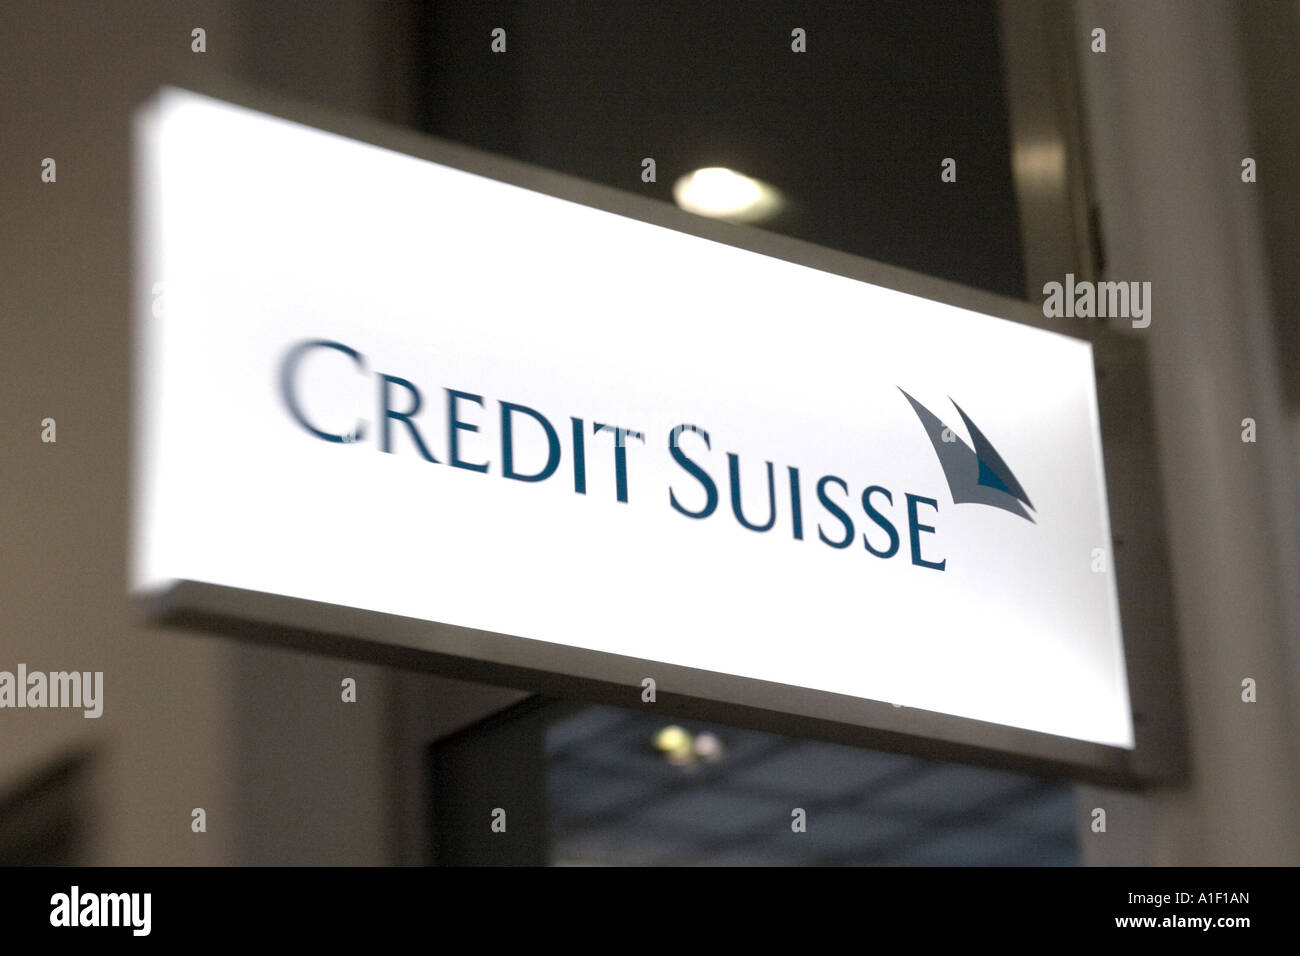 Switzerland Zurich credit suisse Bahnhofstrasse cash service sign Stock Photo